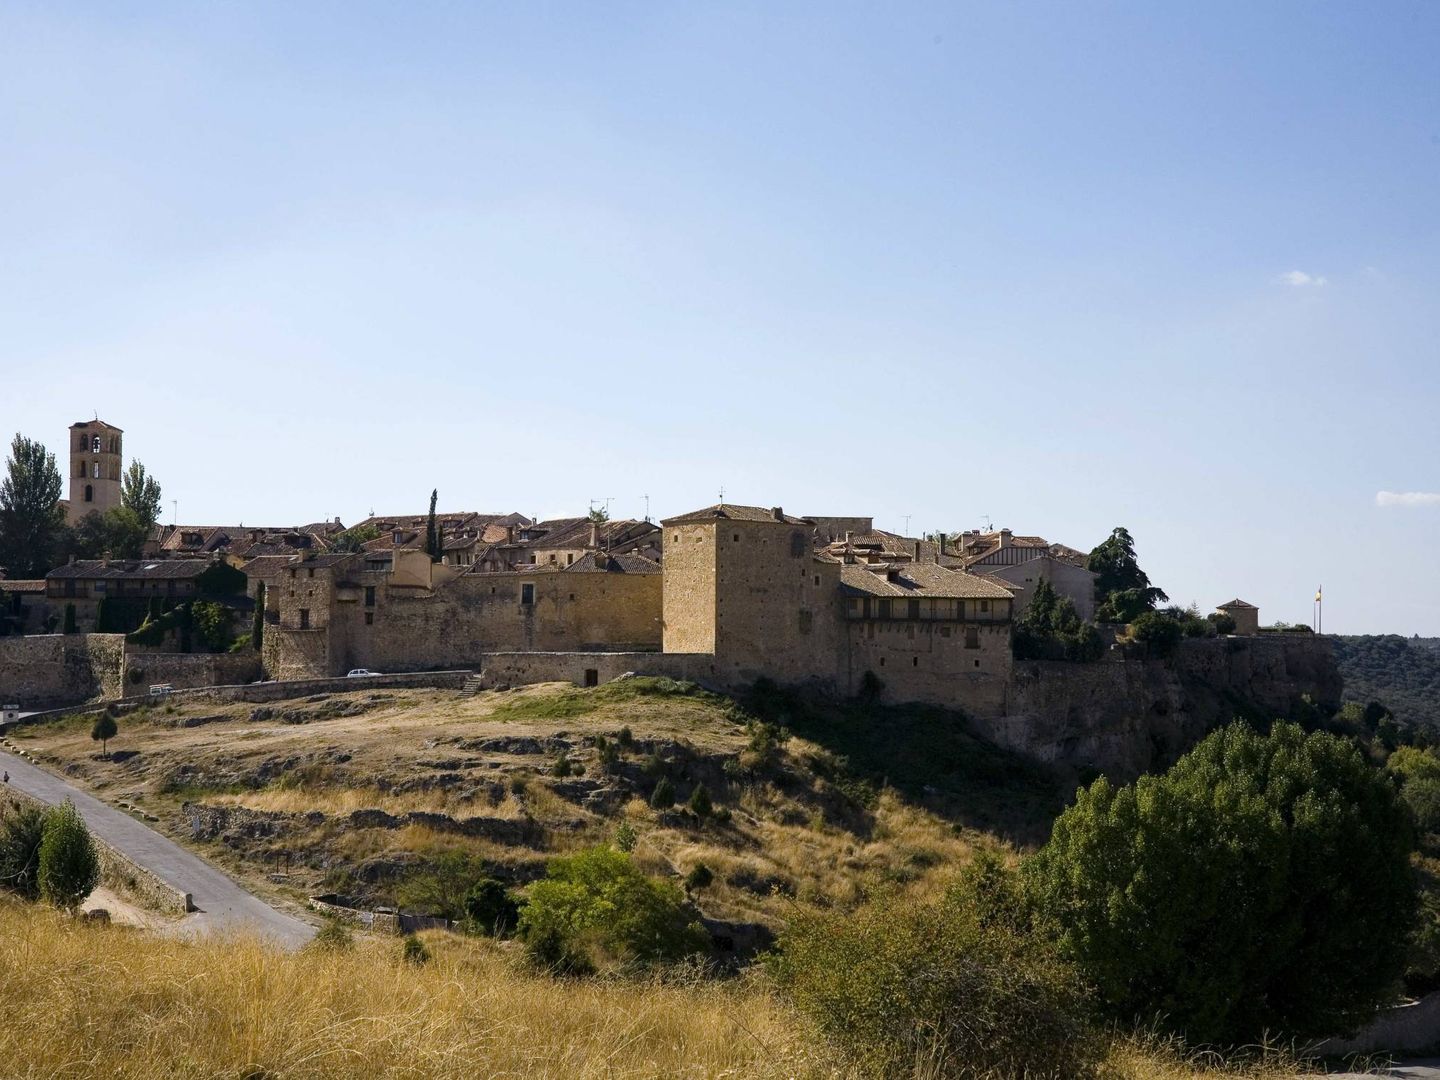 Pedraza en Segovia: Castilla, obsesión noventayochista y nacionalista banal. (Samuel Magal)